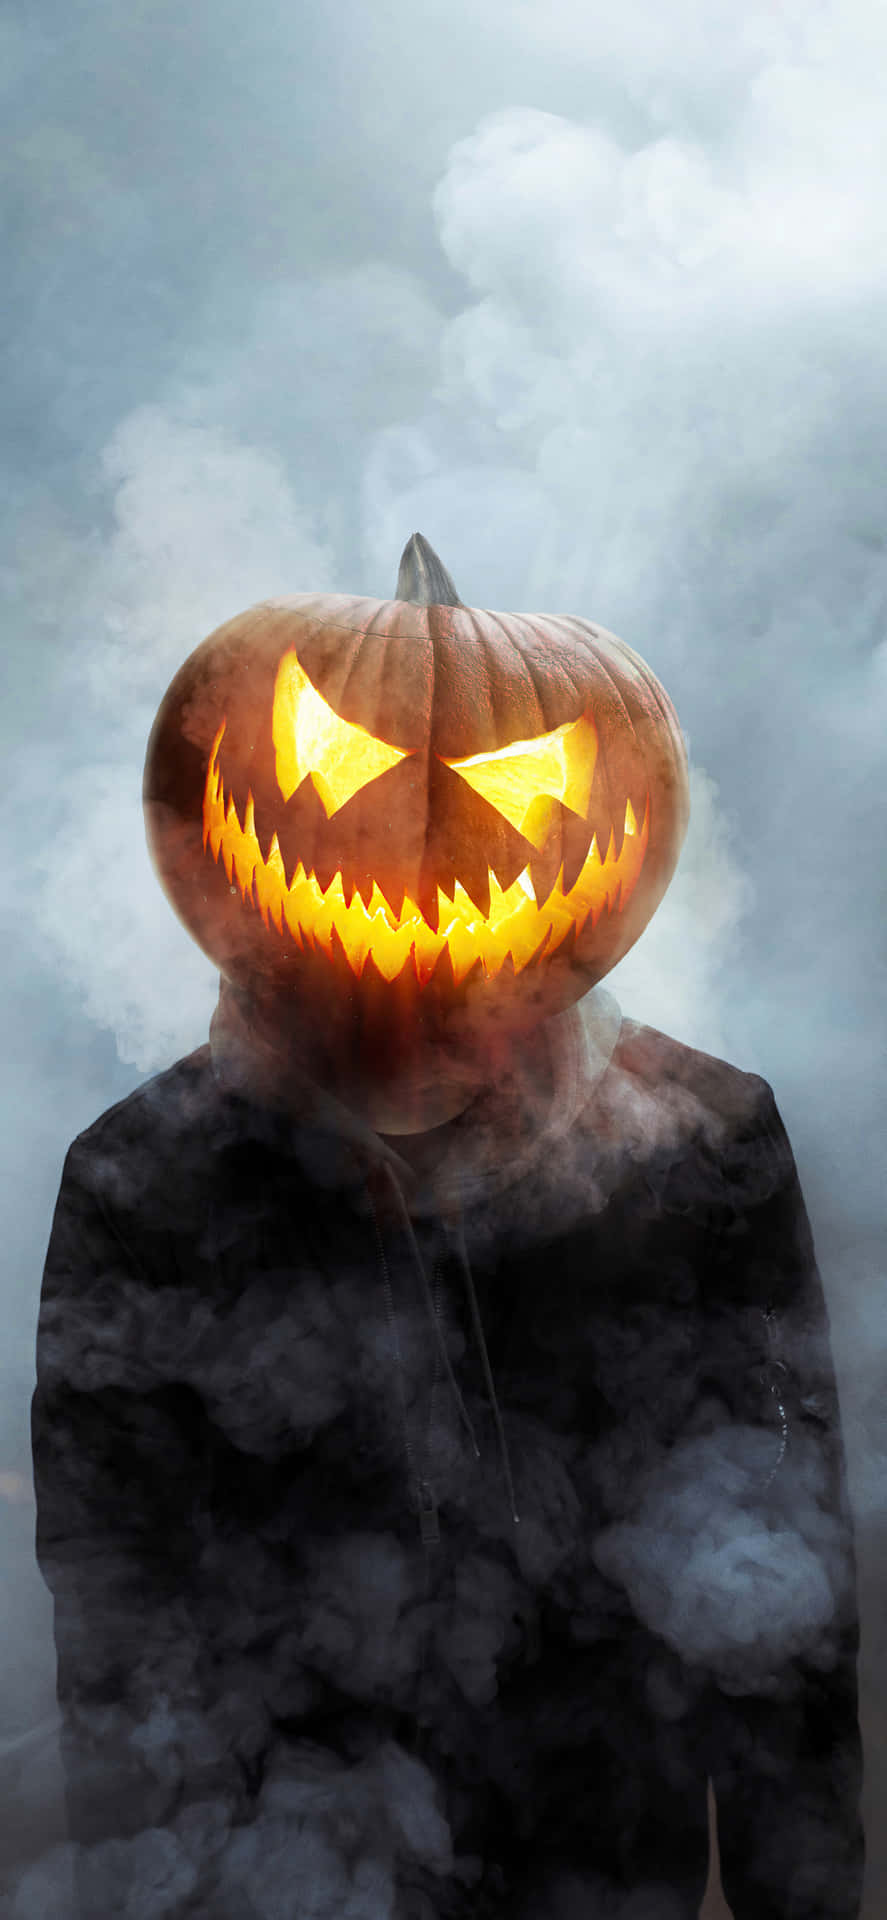 Fondode Pantalla De Halloween Para Iphone Con La Imagen De Una Calabaza De Halloween Riendo, Con El Nombre De Jack O'lantern.